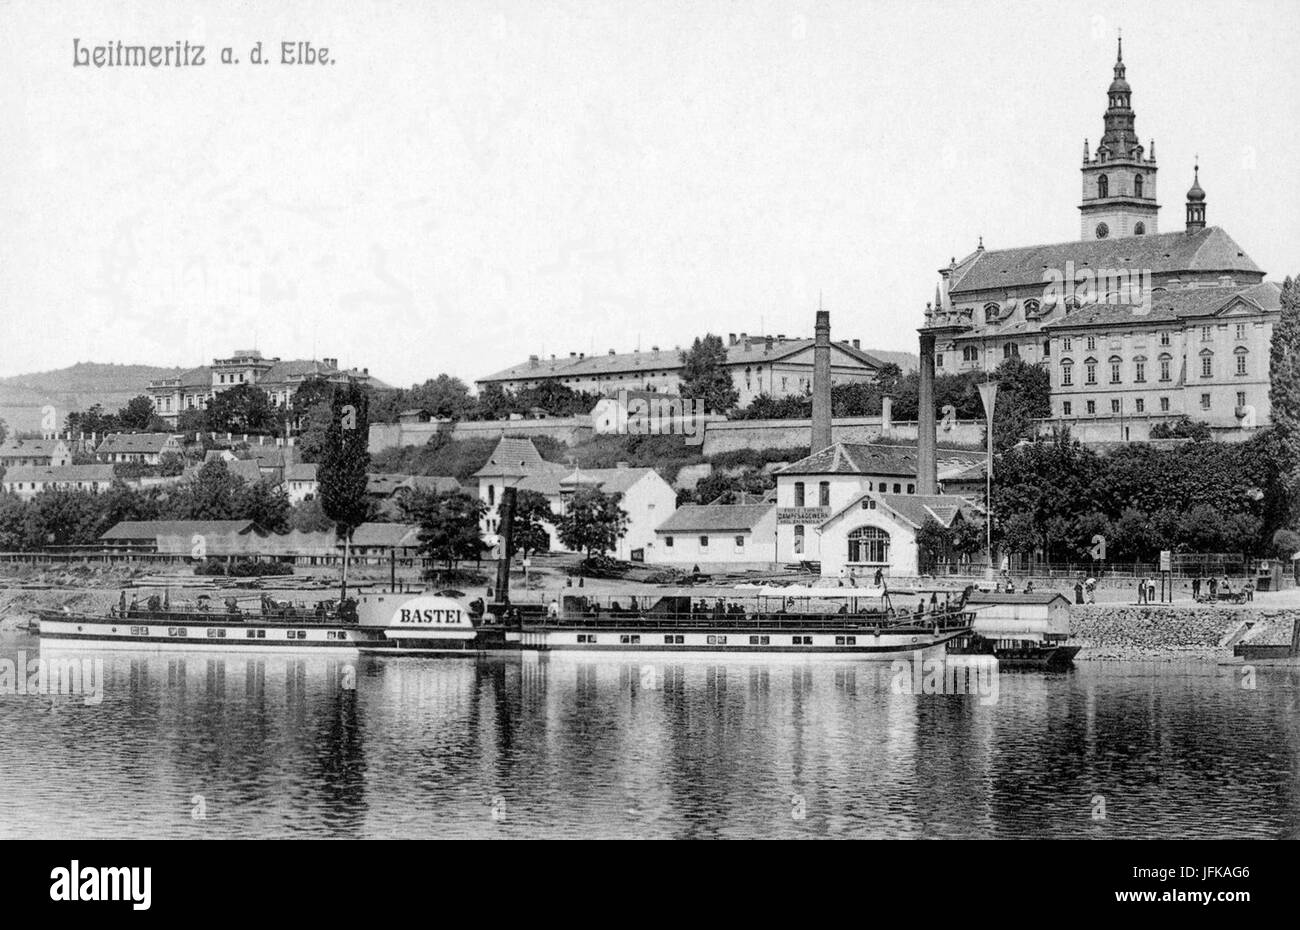 02928-Leitmeritz-1903-Blick auf die Elbe mit Dapfer Bastei und Stadt-Brück & Sohn Kunstverlag Stock Photo